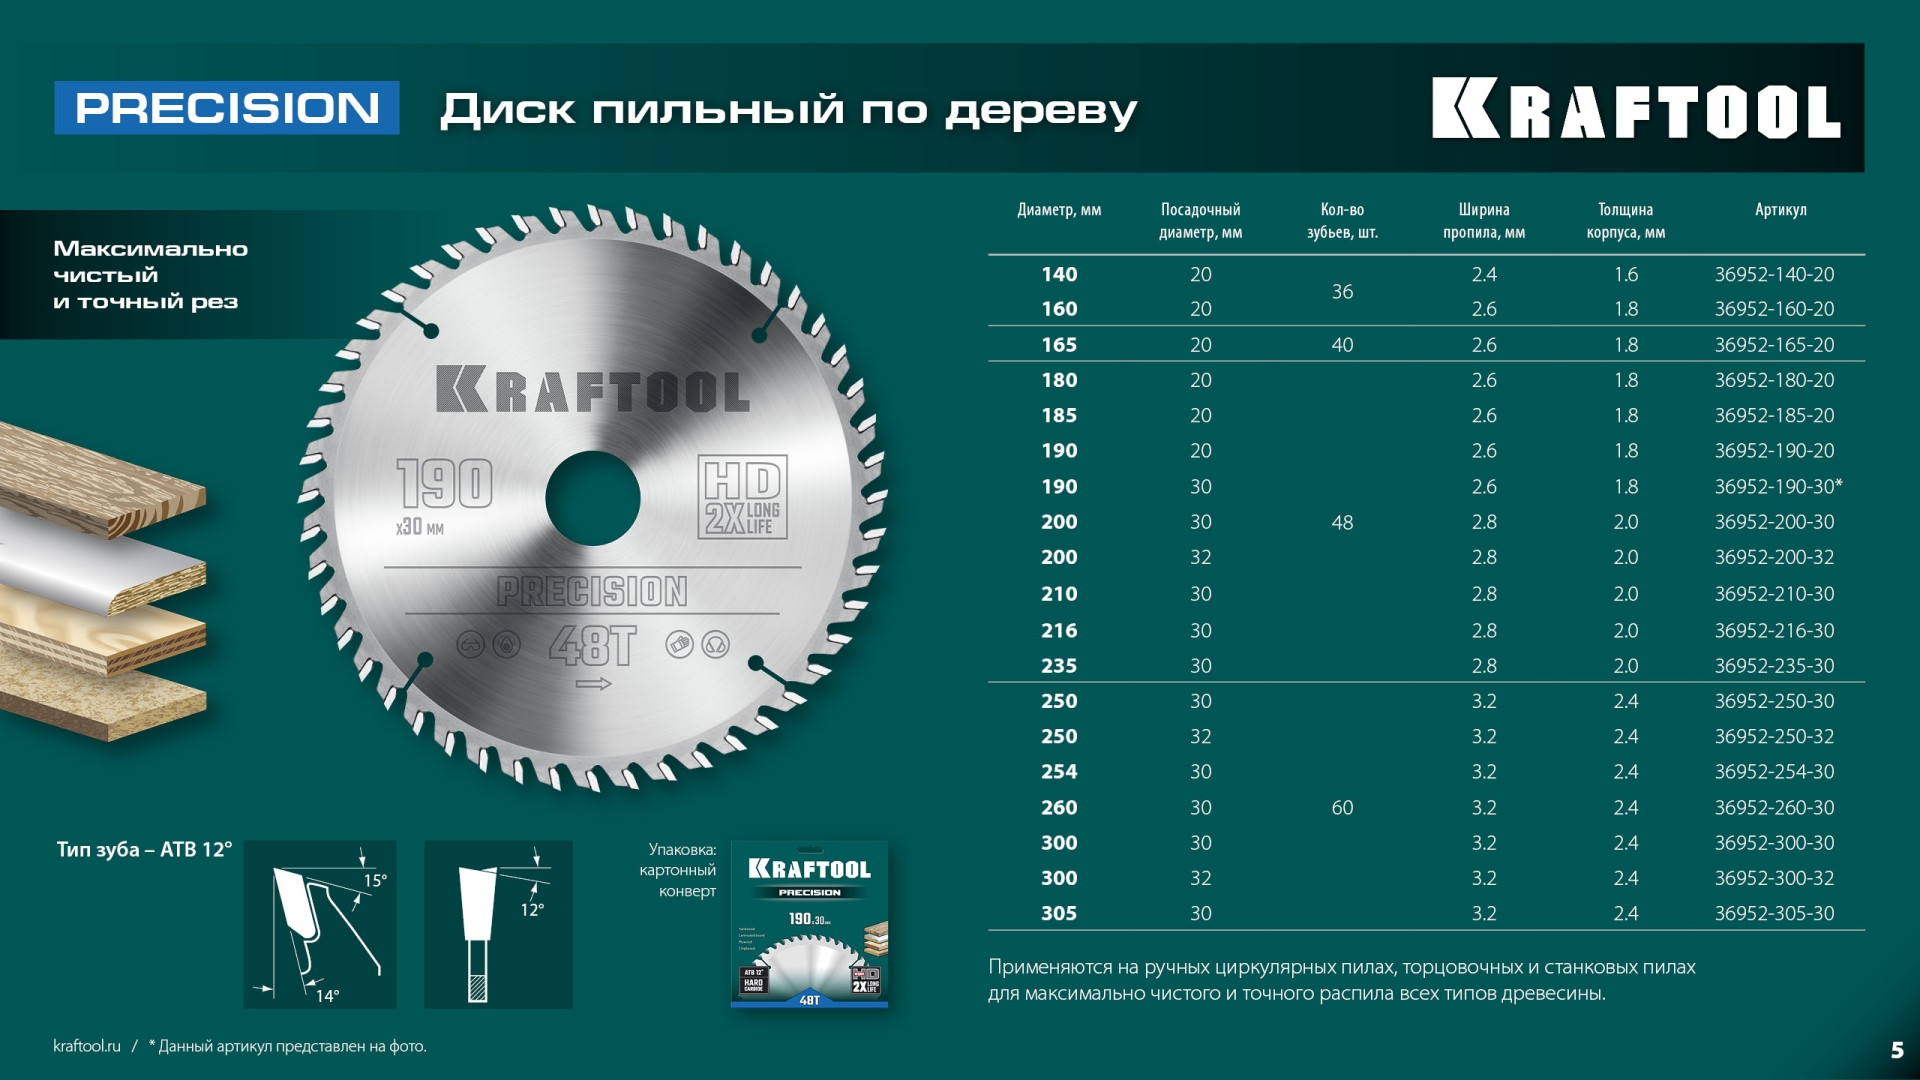 KRAFTOOL Precision, 250 х 32 мм, 60Т, пильный диск по дереву (36952-250-32)